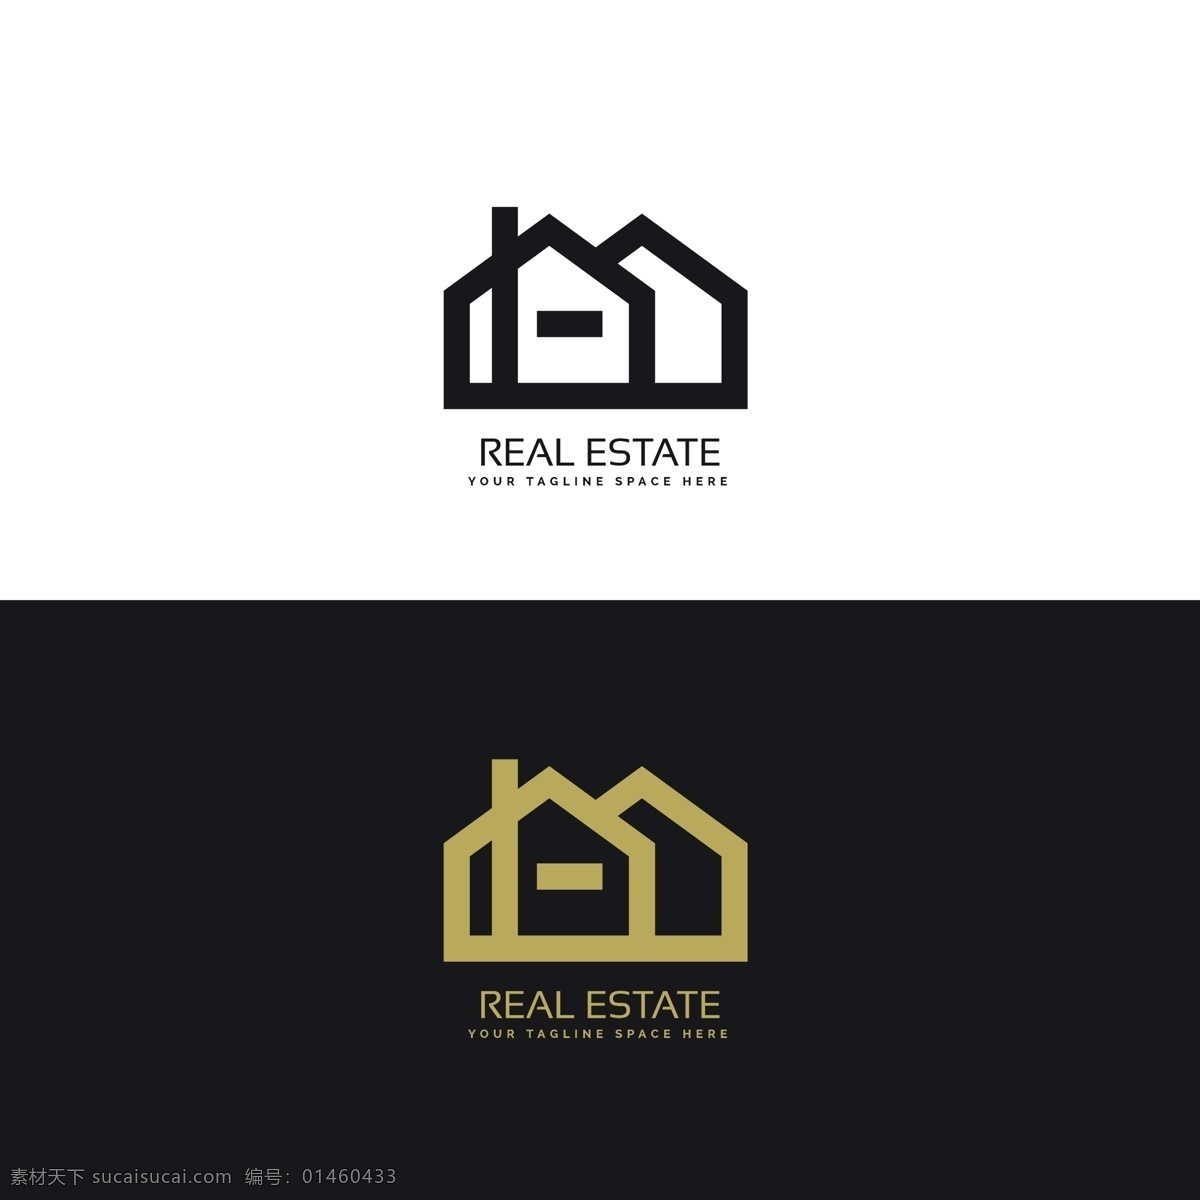 黑色 金色 房地产 标识 标志 企业 城市 住宅 模板 建筑 家庭 公司 企业形象 品牌 金融 现代 工业 象征 身份 最低限度